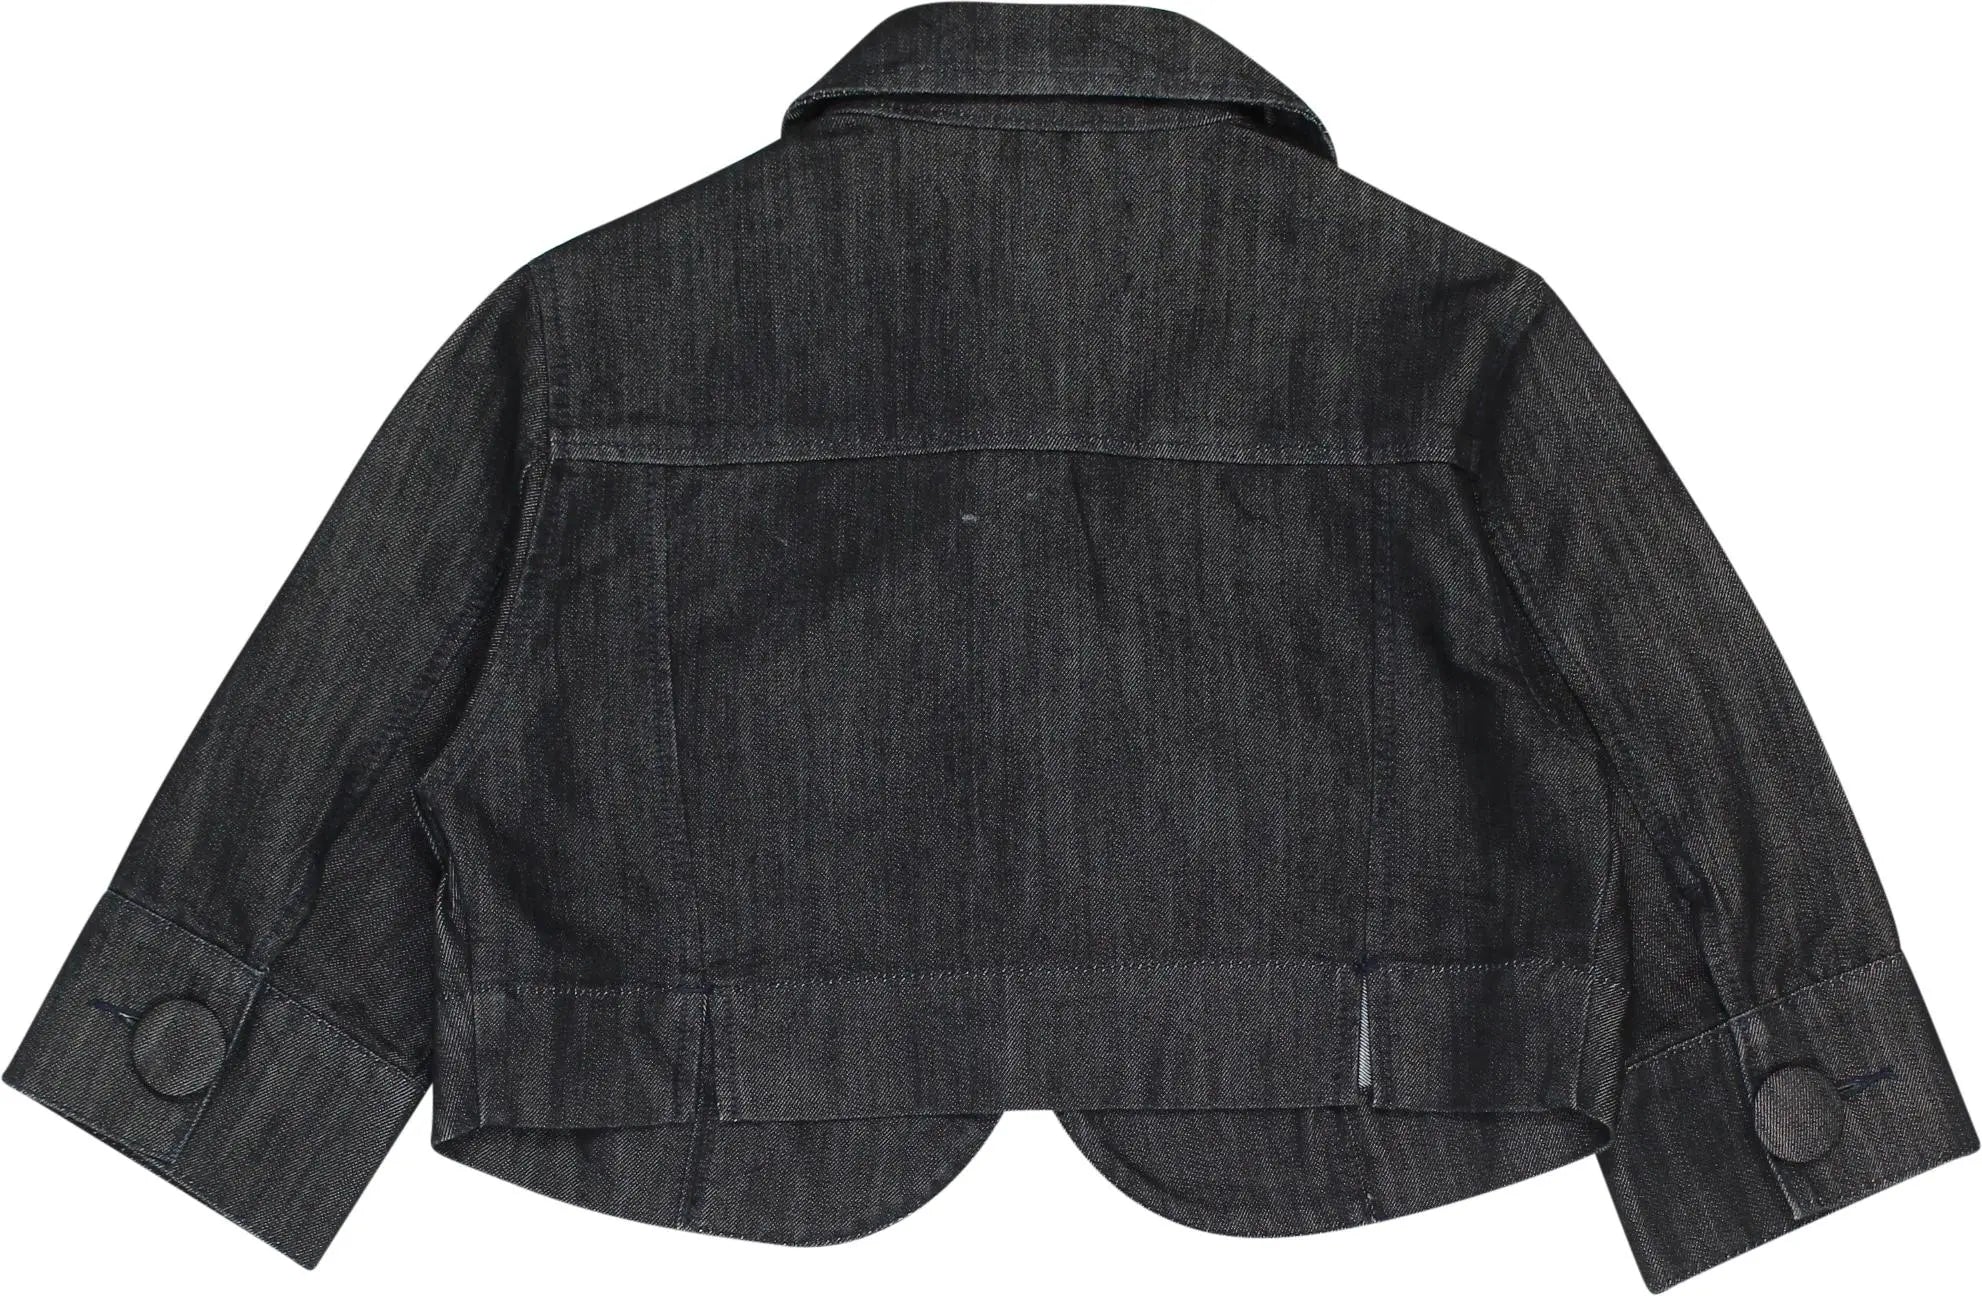 Eksept - Cropped Denim Jacket- ThriftTale.com - Vintage and second handclothing